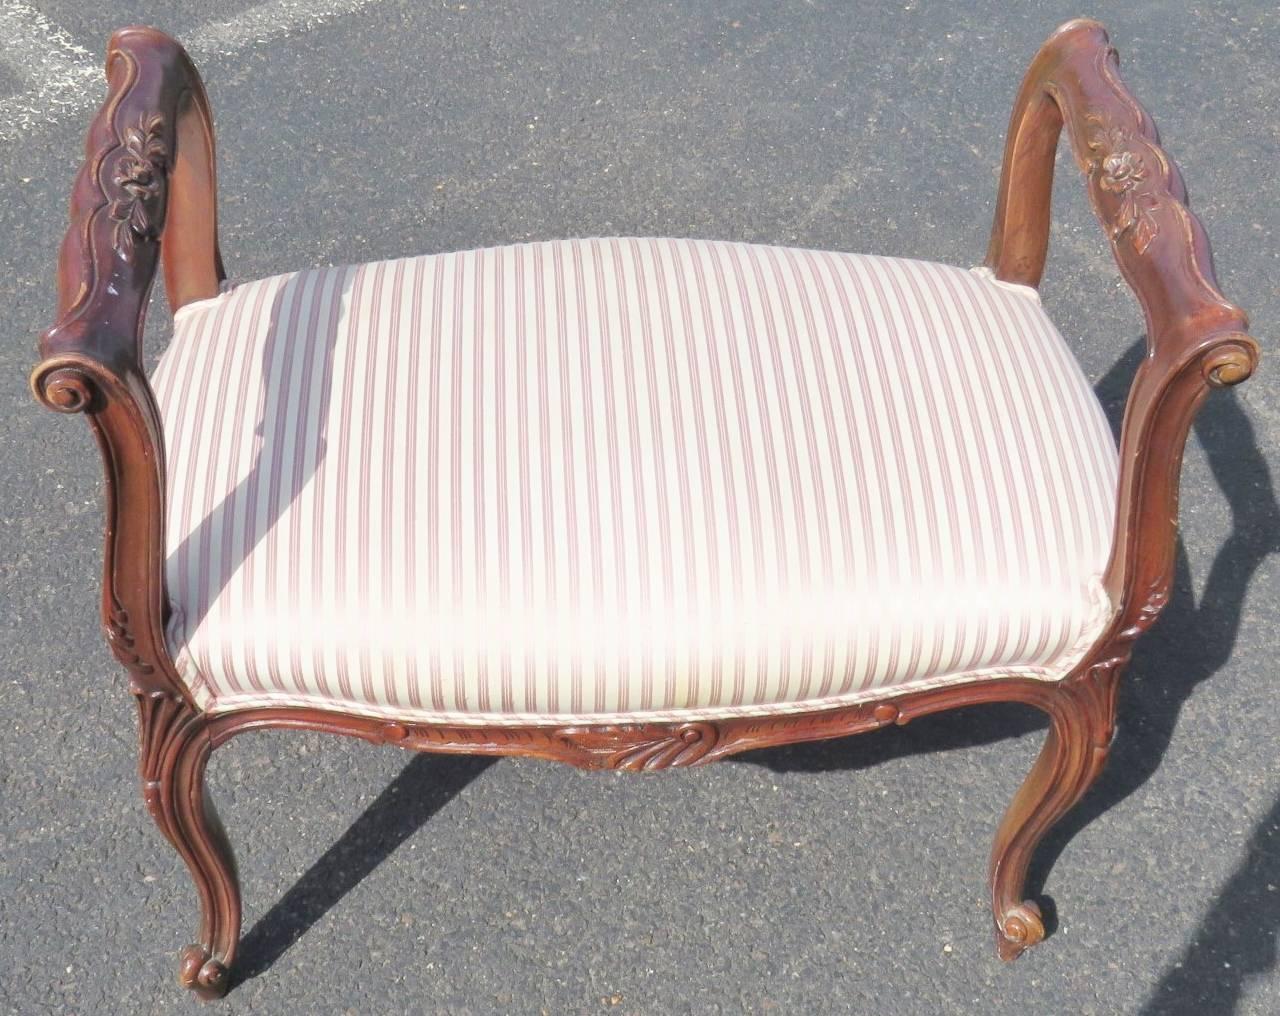 Walnut carved frame. Striped upholstered seat.